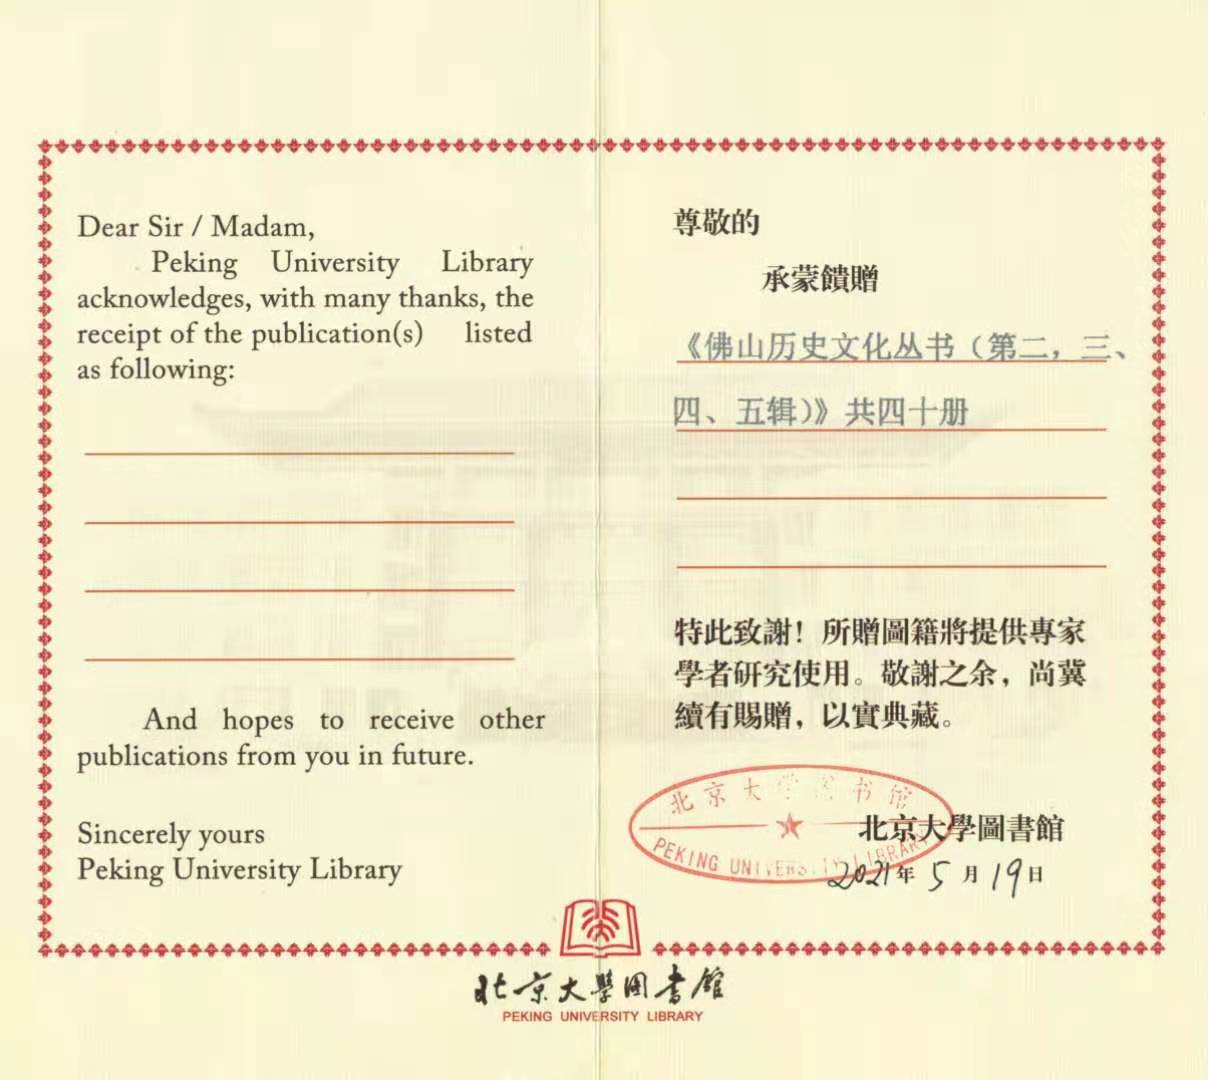 《佛山历史文化丛书》入藏全国公共图书馆